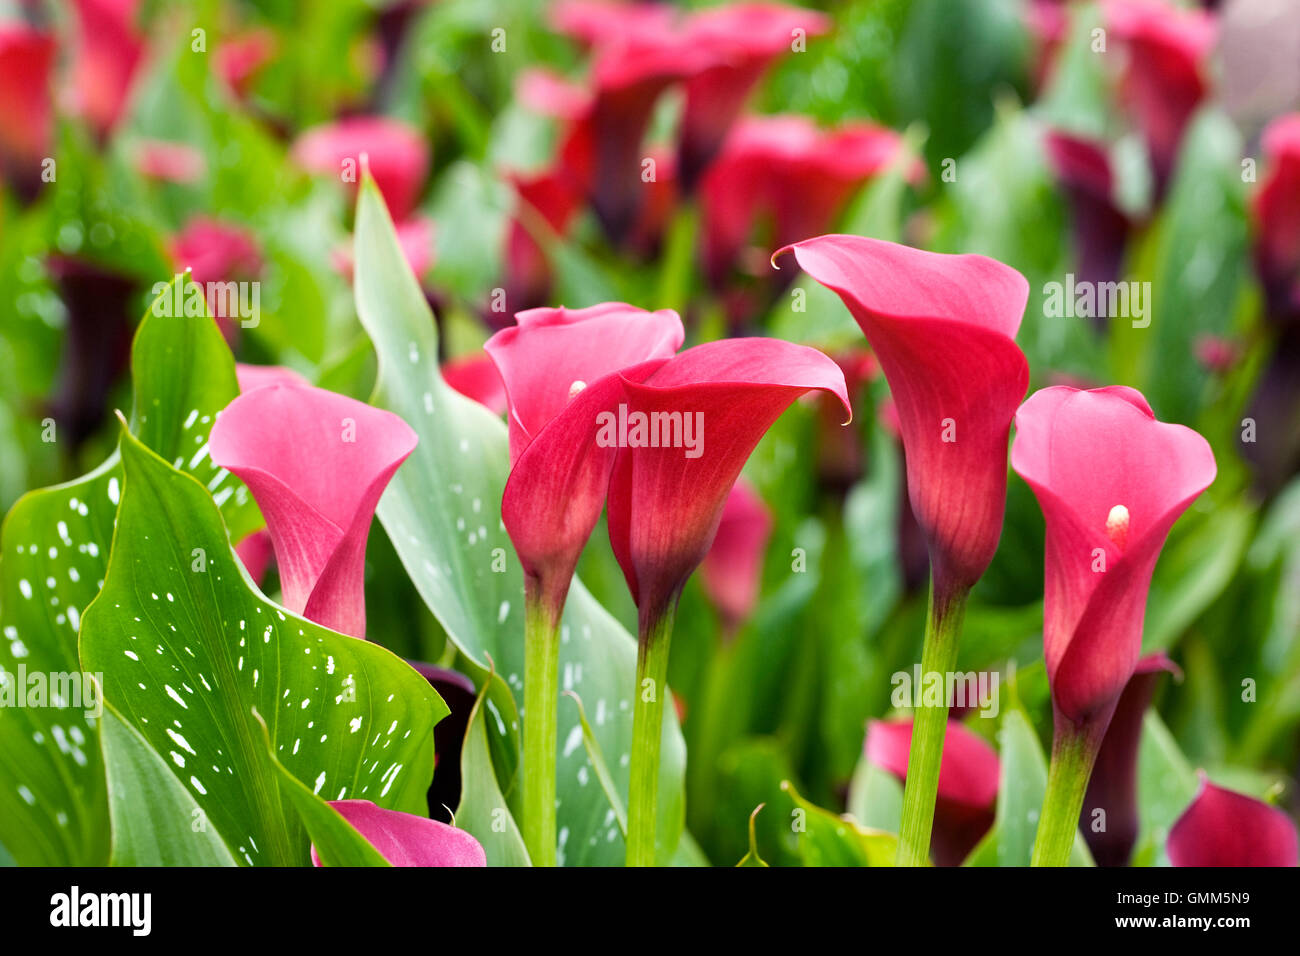 Zantedeschia 'Hawk Eye' flowers growing outdoors Stock Photo - Alamy